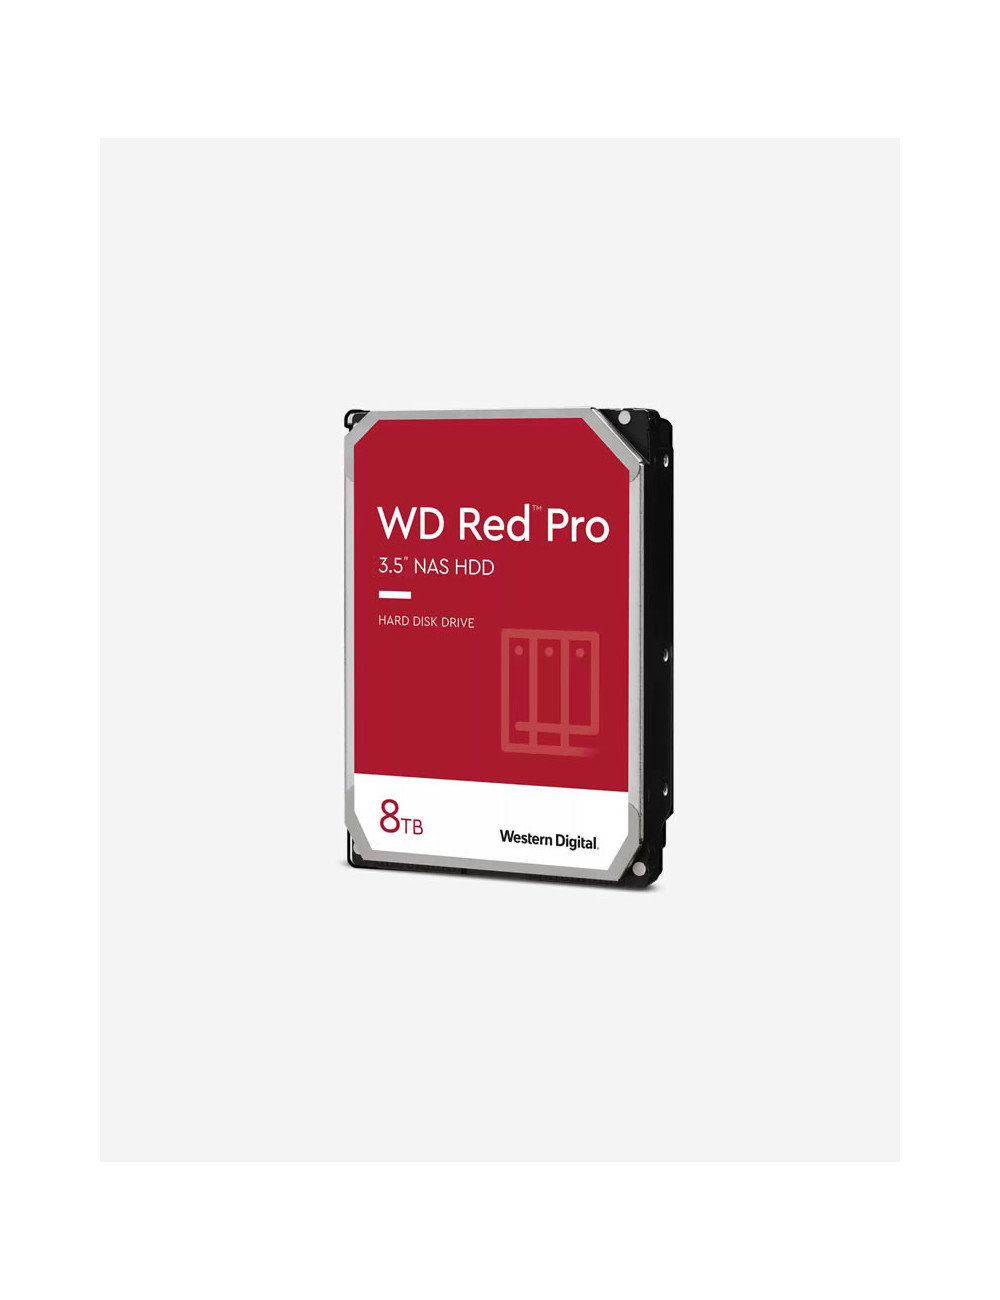 WD RED PRO 8TB Unidad de disco duro de 3,5"